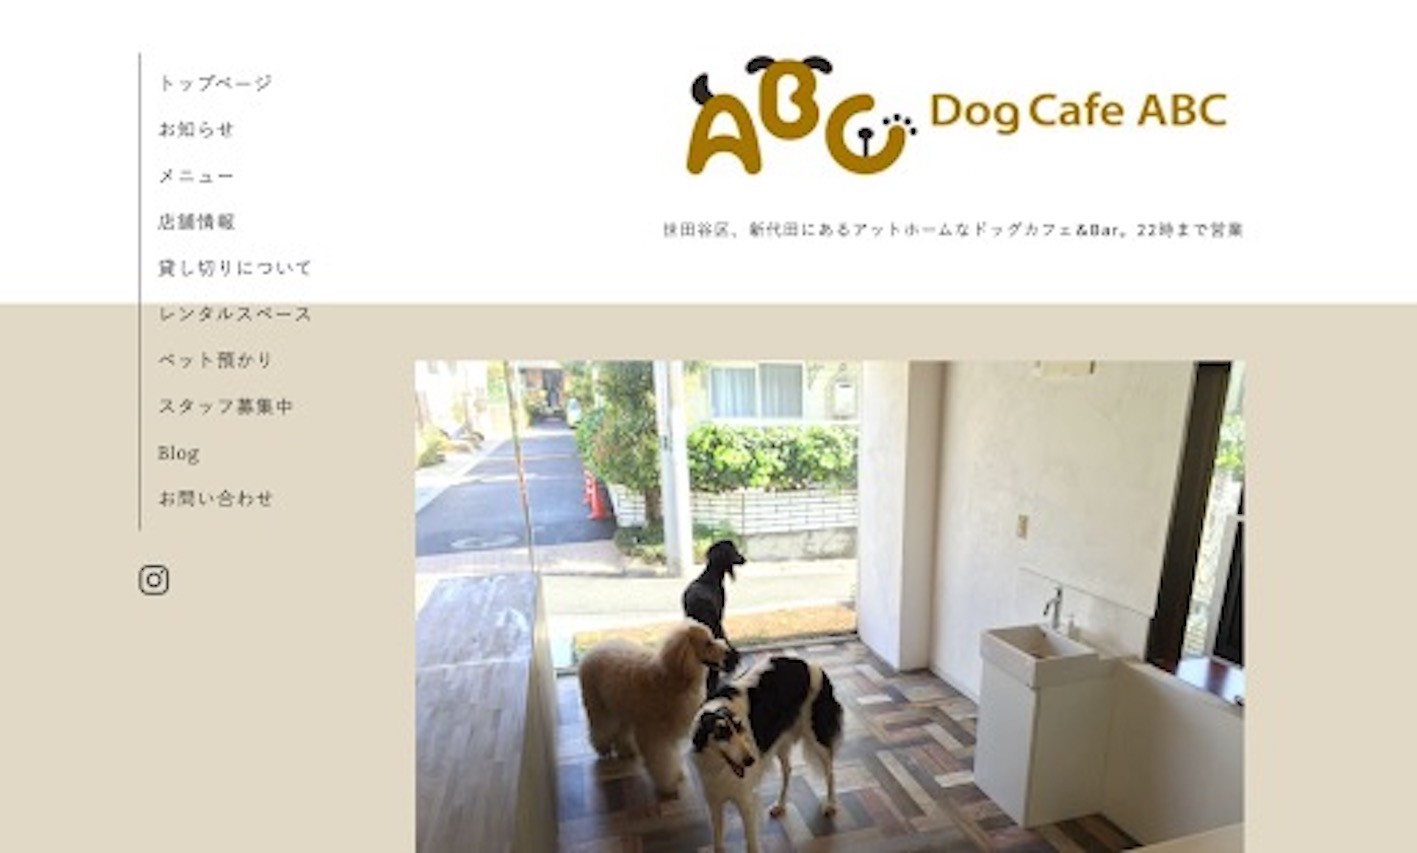 Dog Cafe ABC